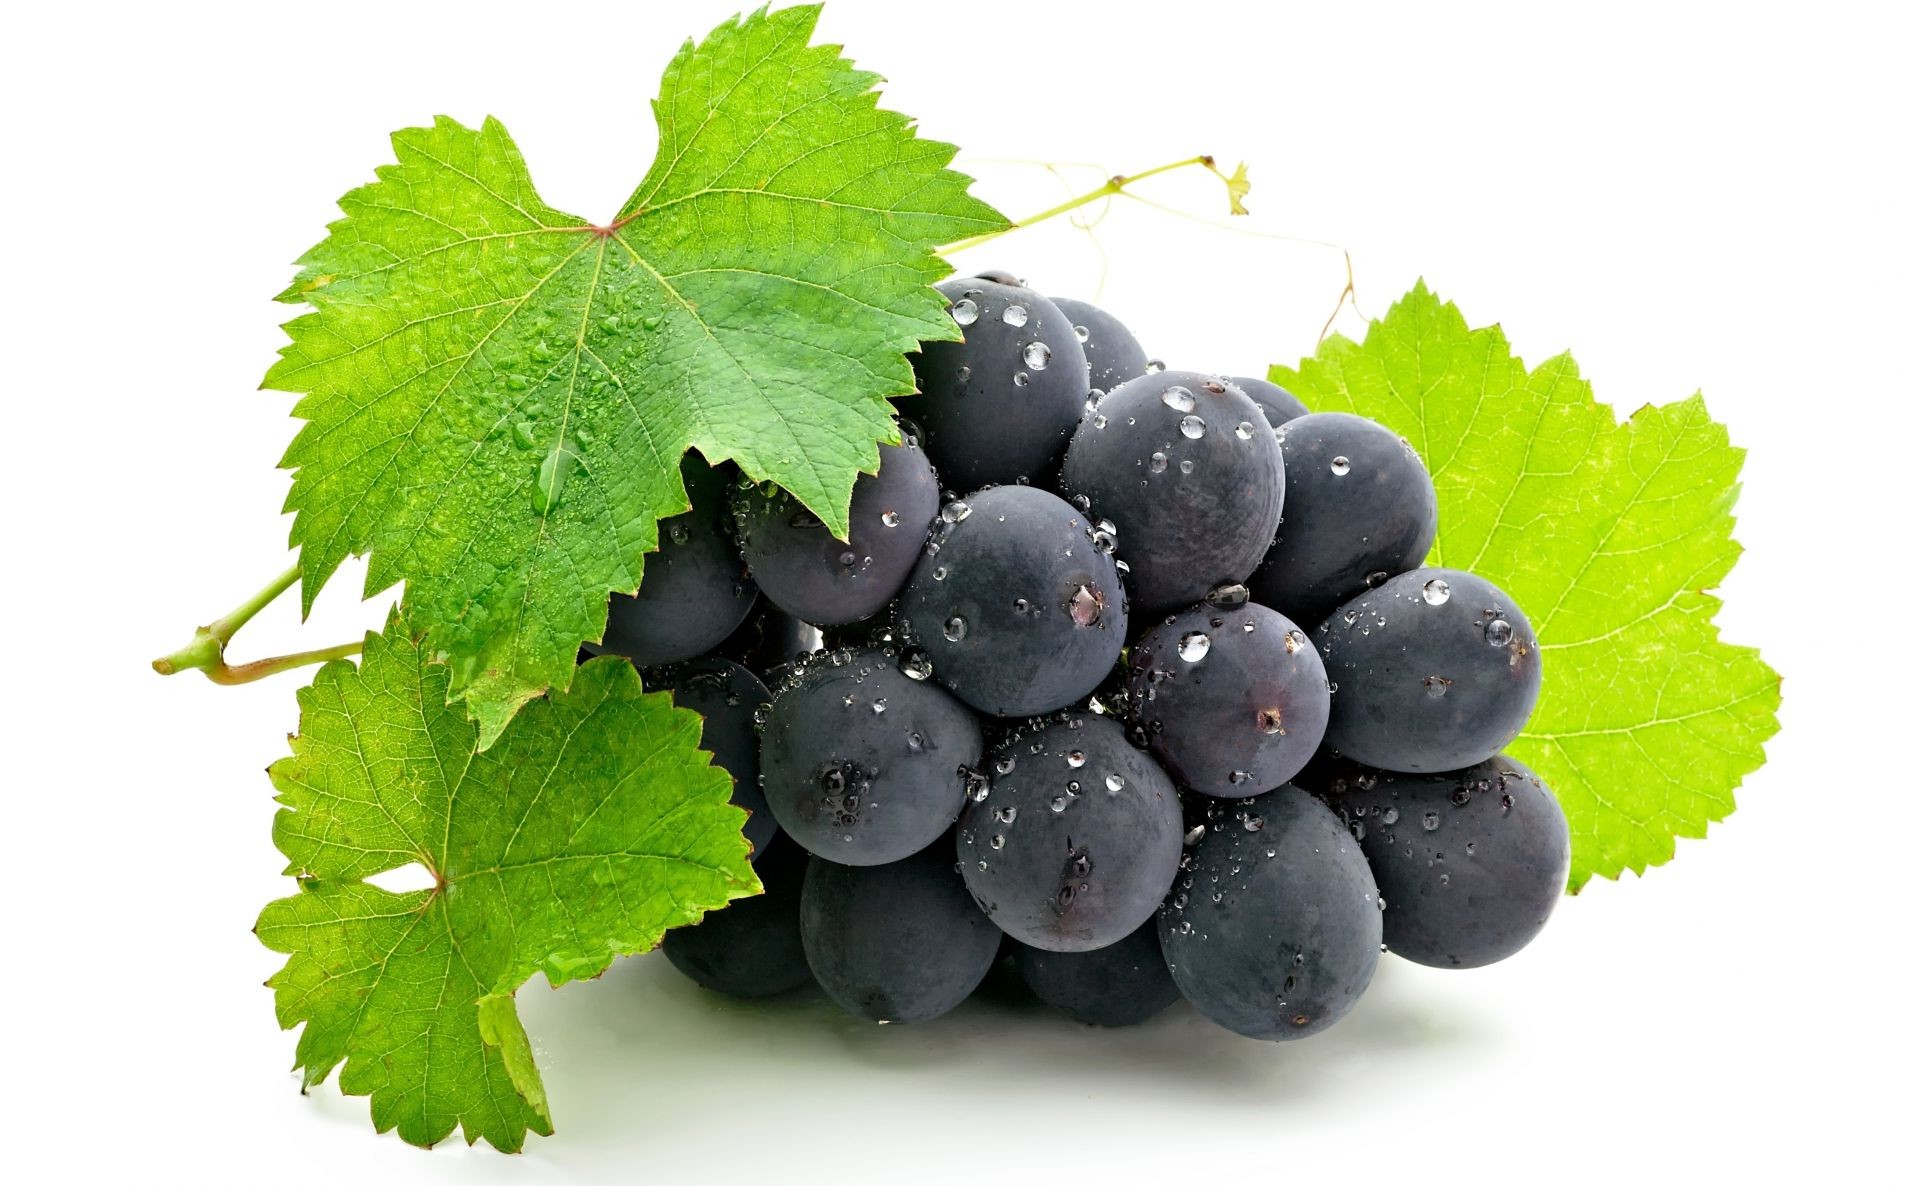 ягоды вайн фрукты лист сочные вина виноград грейпвайн природа здоровья еда здоровый ягодка пастбище винзавод виноградник изолированные кластер виноградарство флора